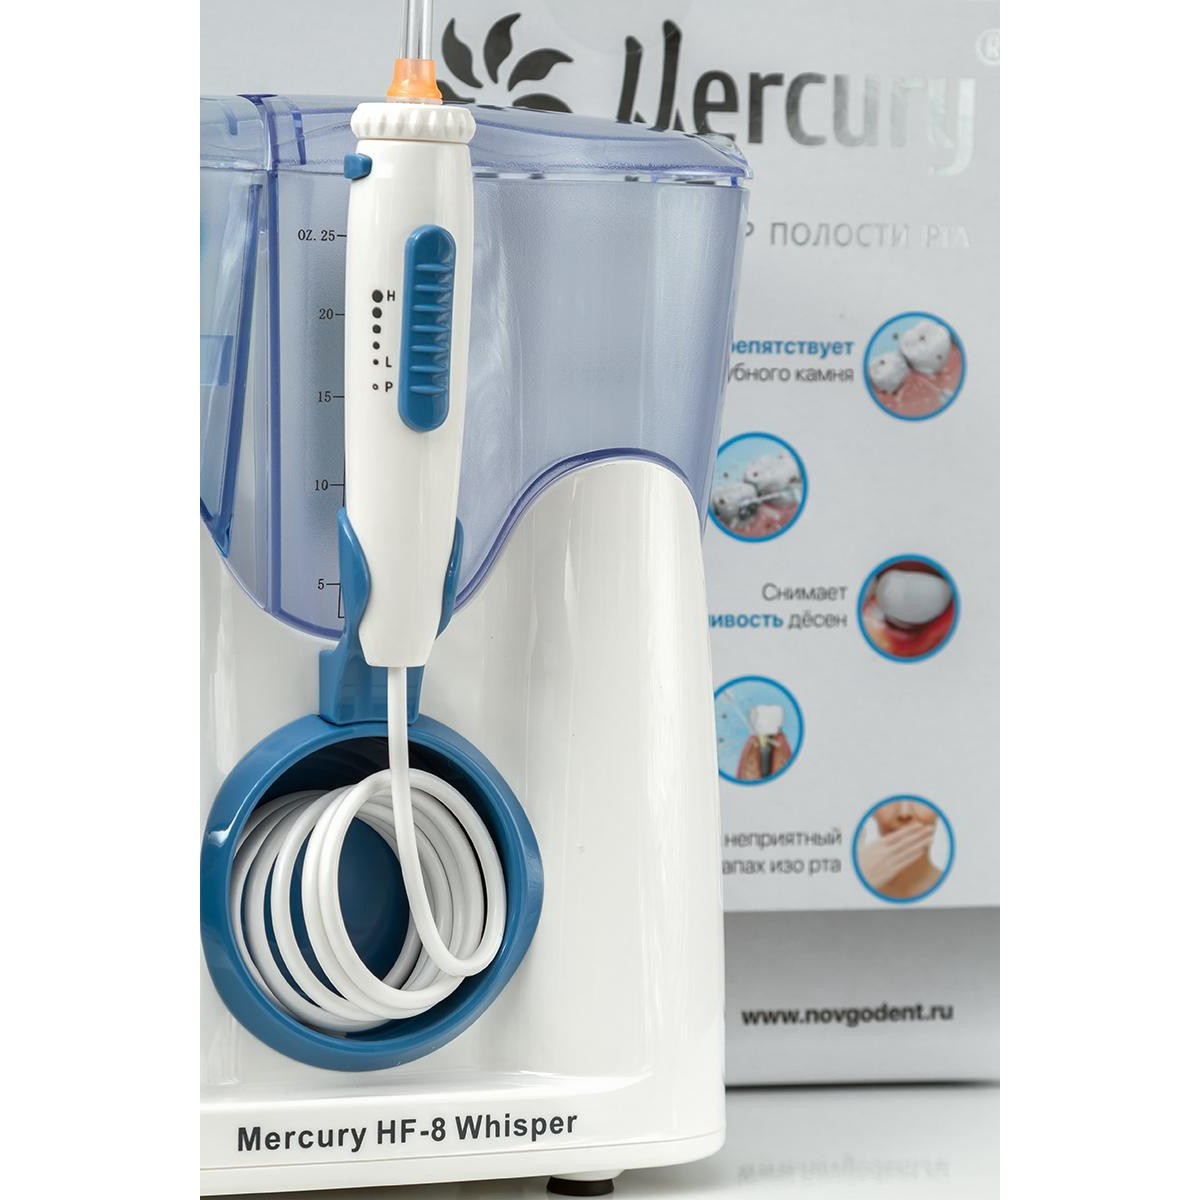 Ирригатор mercury hf 8 цена емкость для лекарств для ингалятора спб